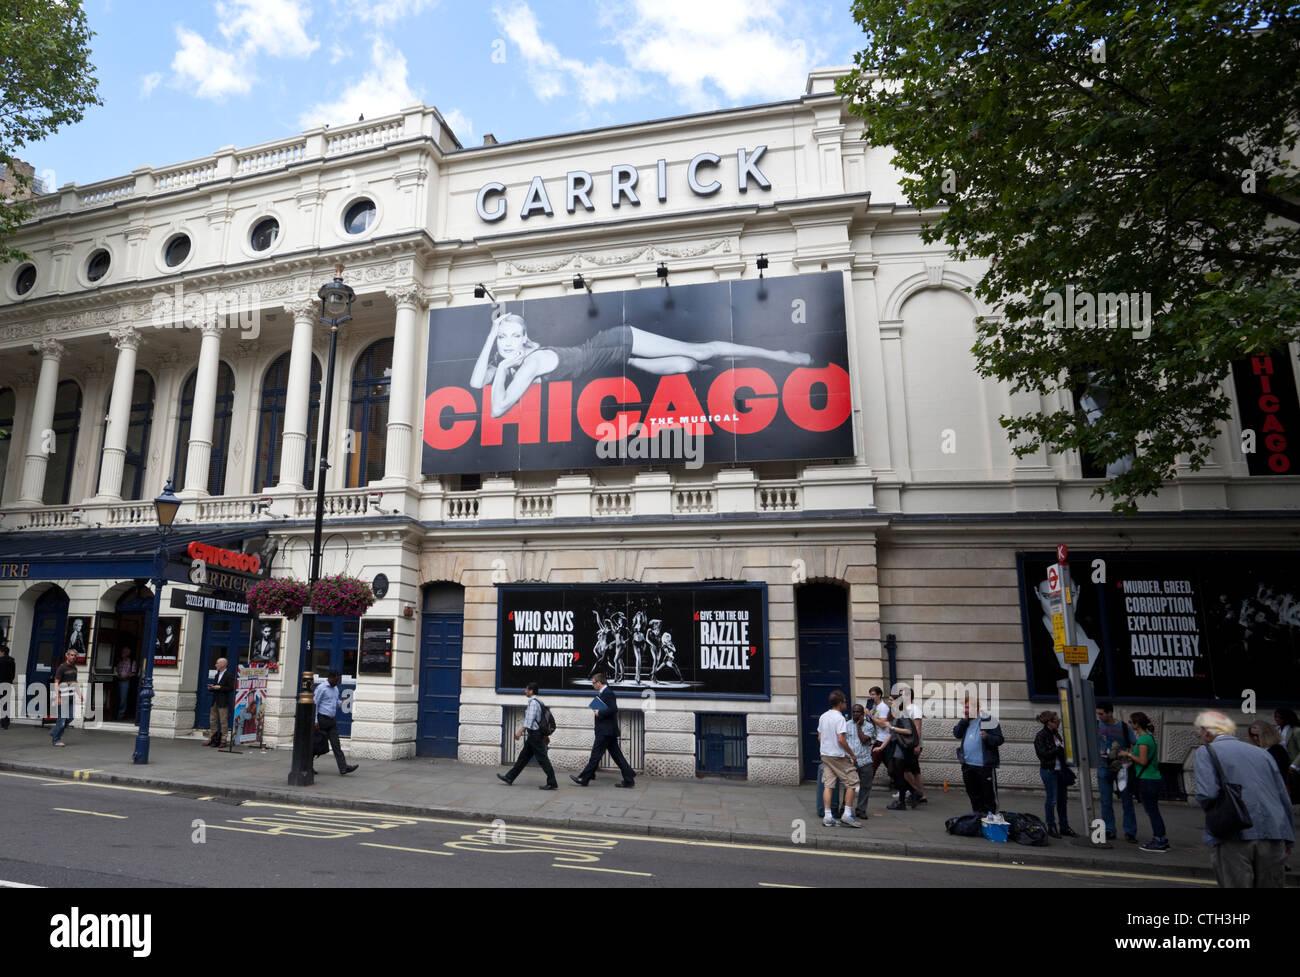 Un panneau de la comédie musicale Chicago au Garrick Theatre, Charing Cross Road, City of Westminster, London, W2, Angleterre, Royaume-Uni. Banque D'Images